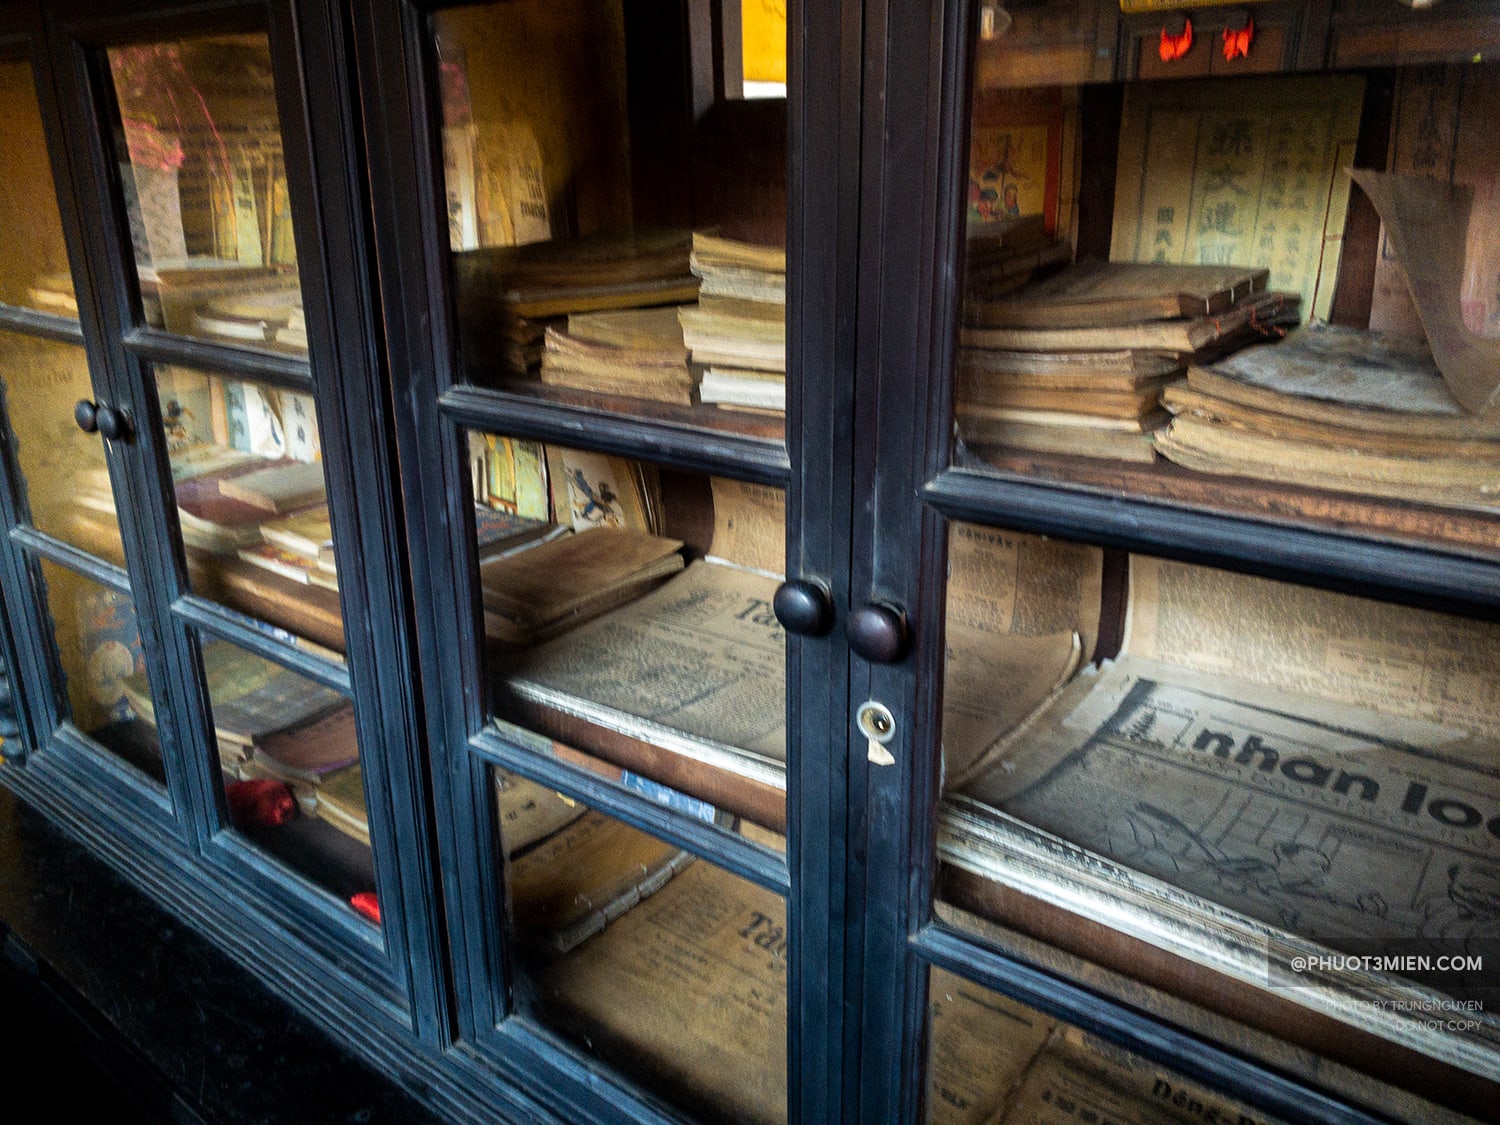 các tờ báo cũ còn được lưu giữ tại đây